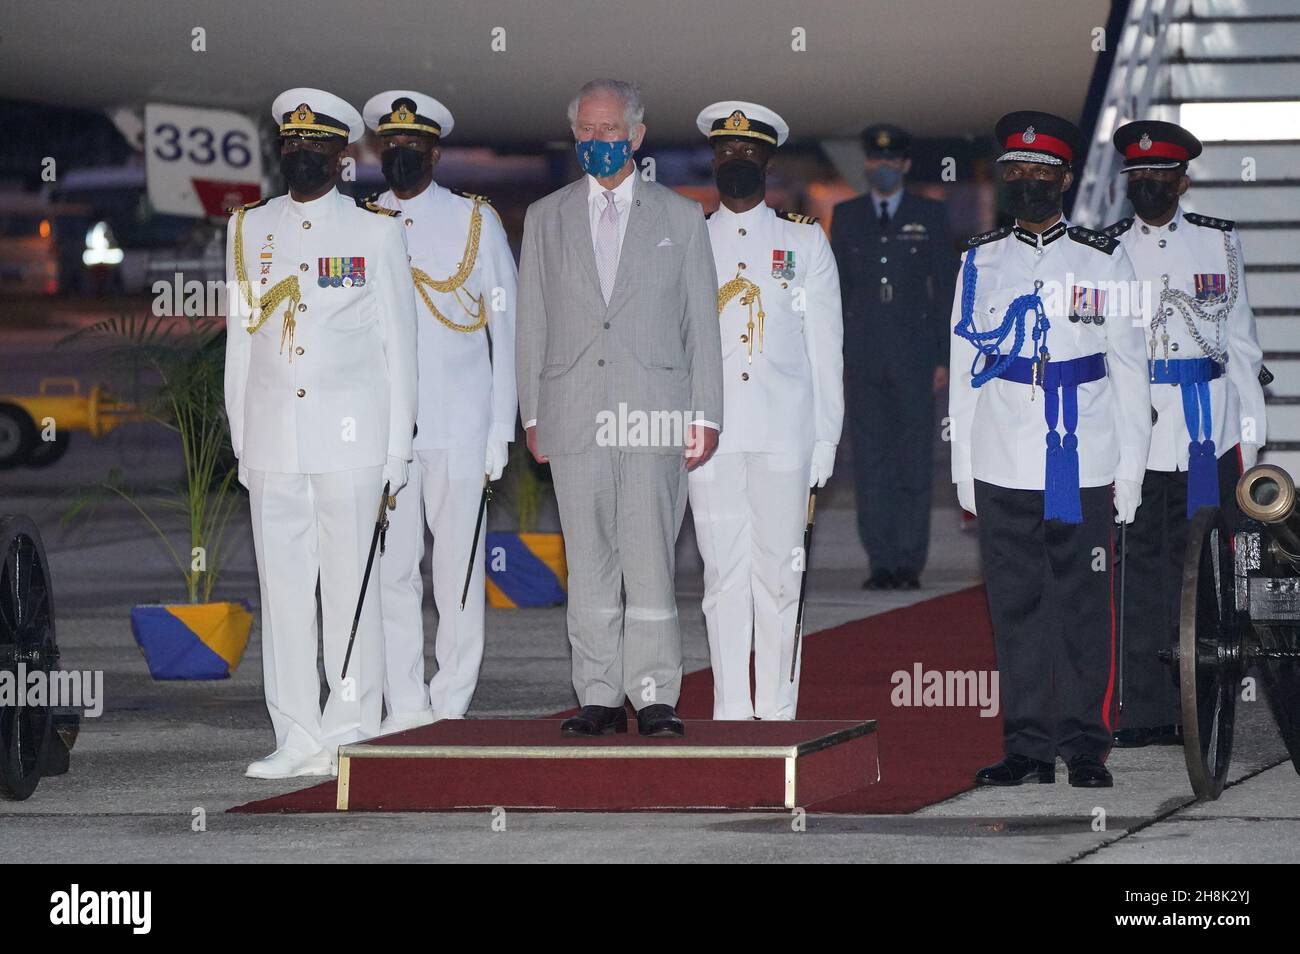 Der Prinz von Wales auf dem internationalen Flughafen Grantley Adams in Barbados, bevor er nach einer Zeremonie anlässlich des Übergangs des Landes zu einer republik innerhalb des Commonwealth nach Großbritannien aufbrechen wird. Bilddatum: Dienstag, 30. November 2021. Stockfoto